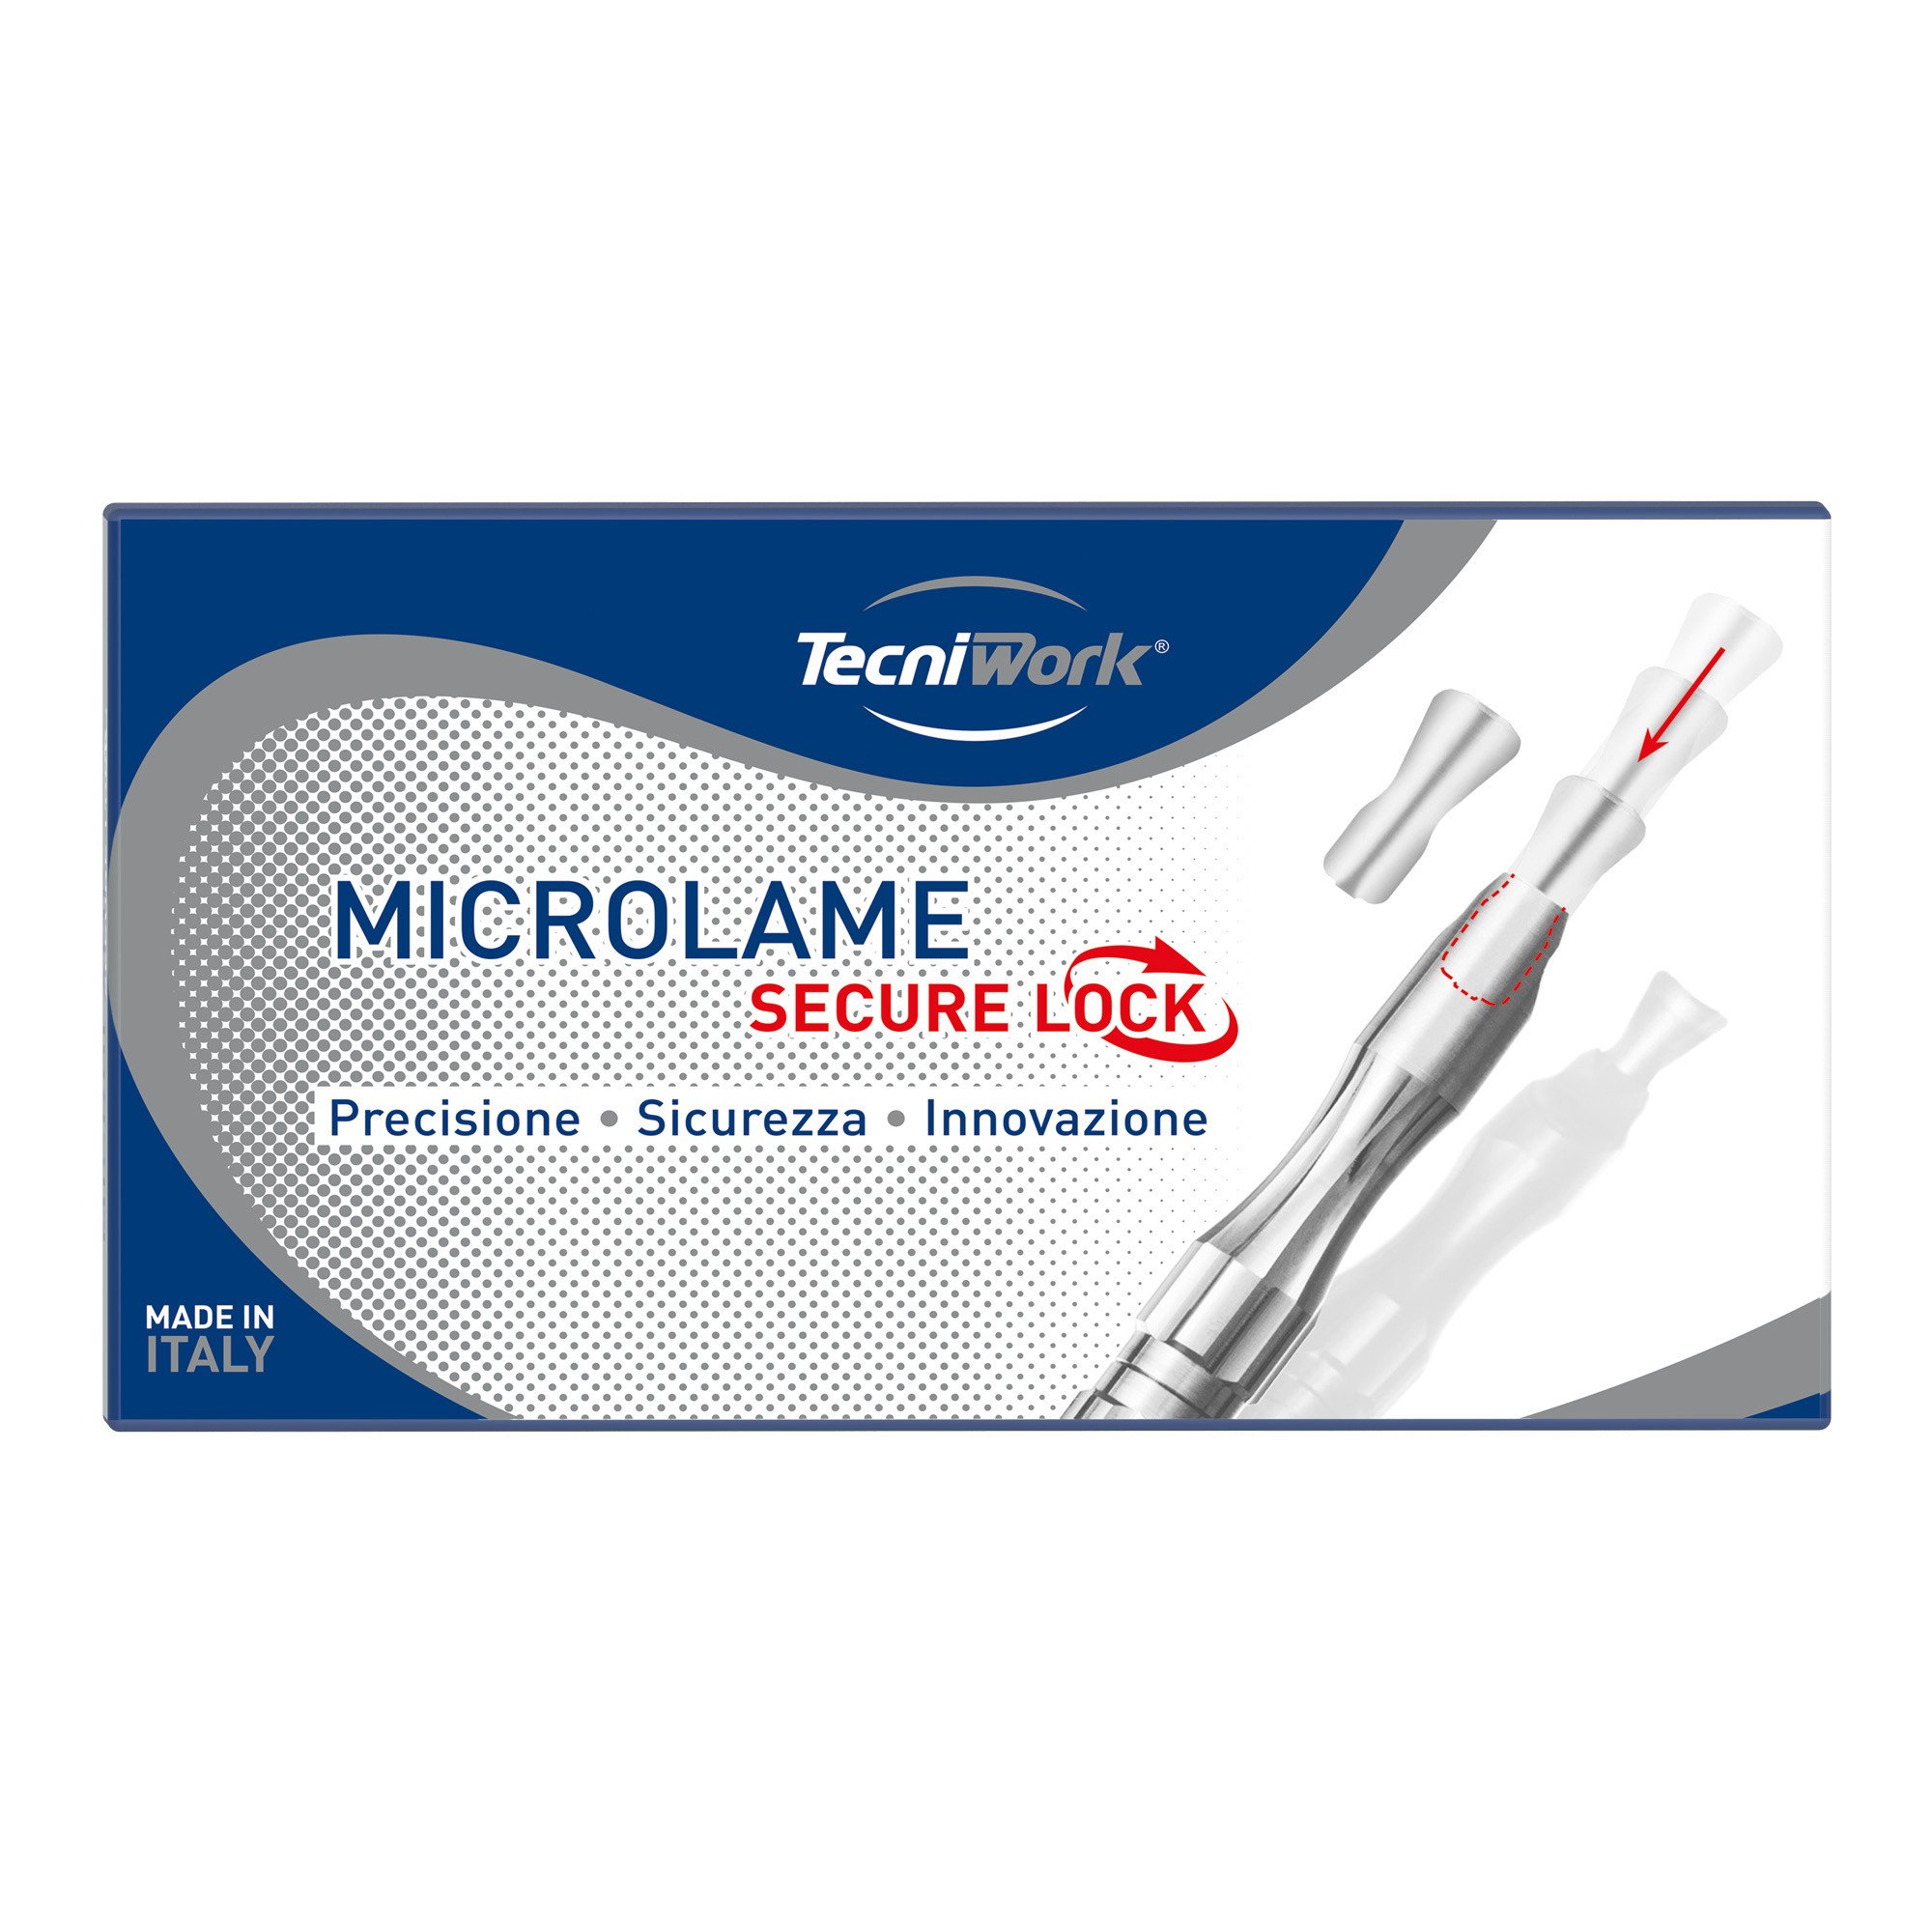 Microlame professionali singole sterili e monouso Secure Lock misure assortite 40 pz